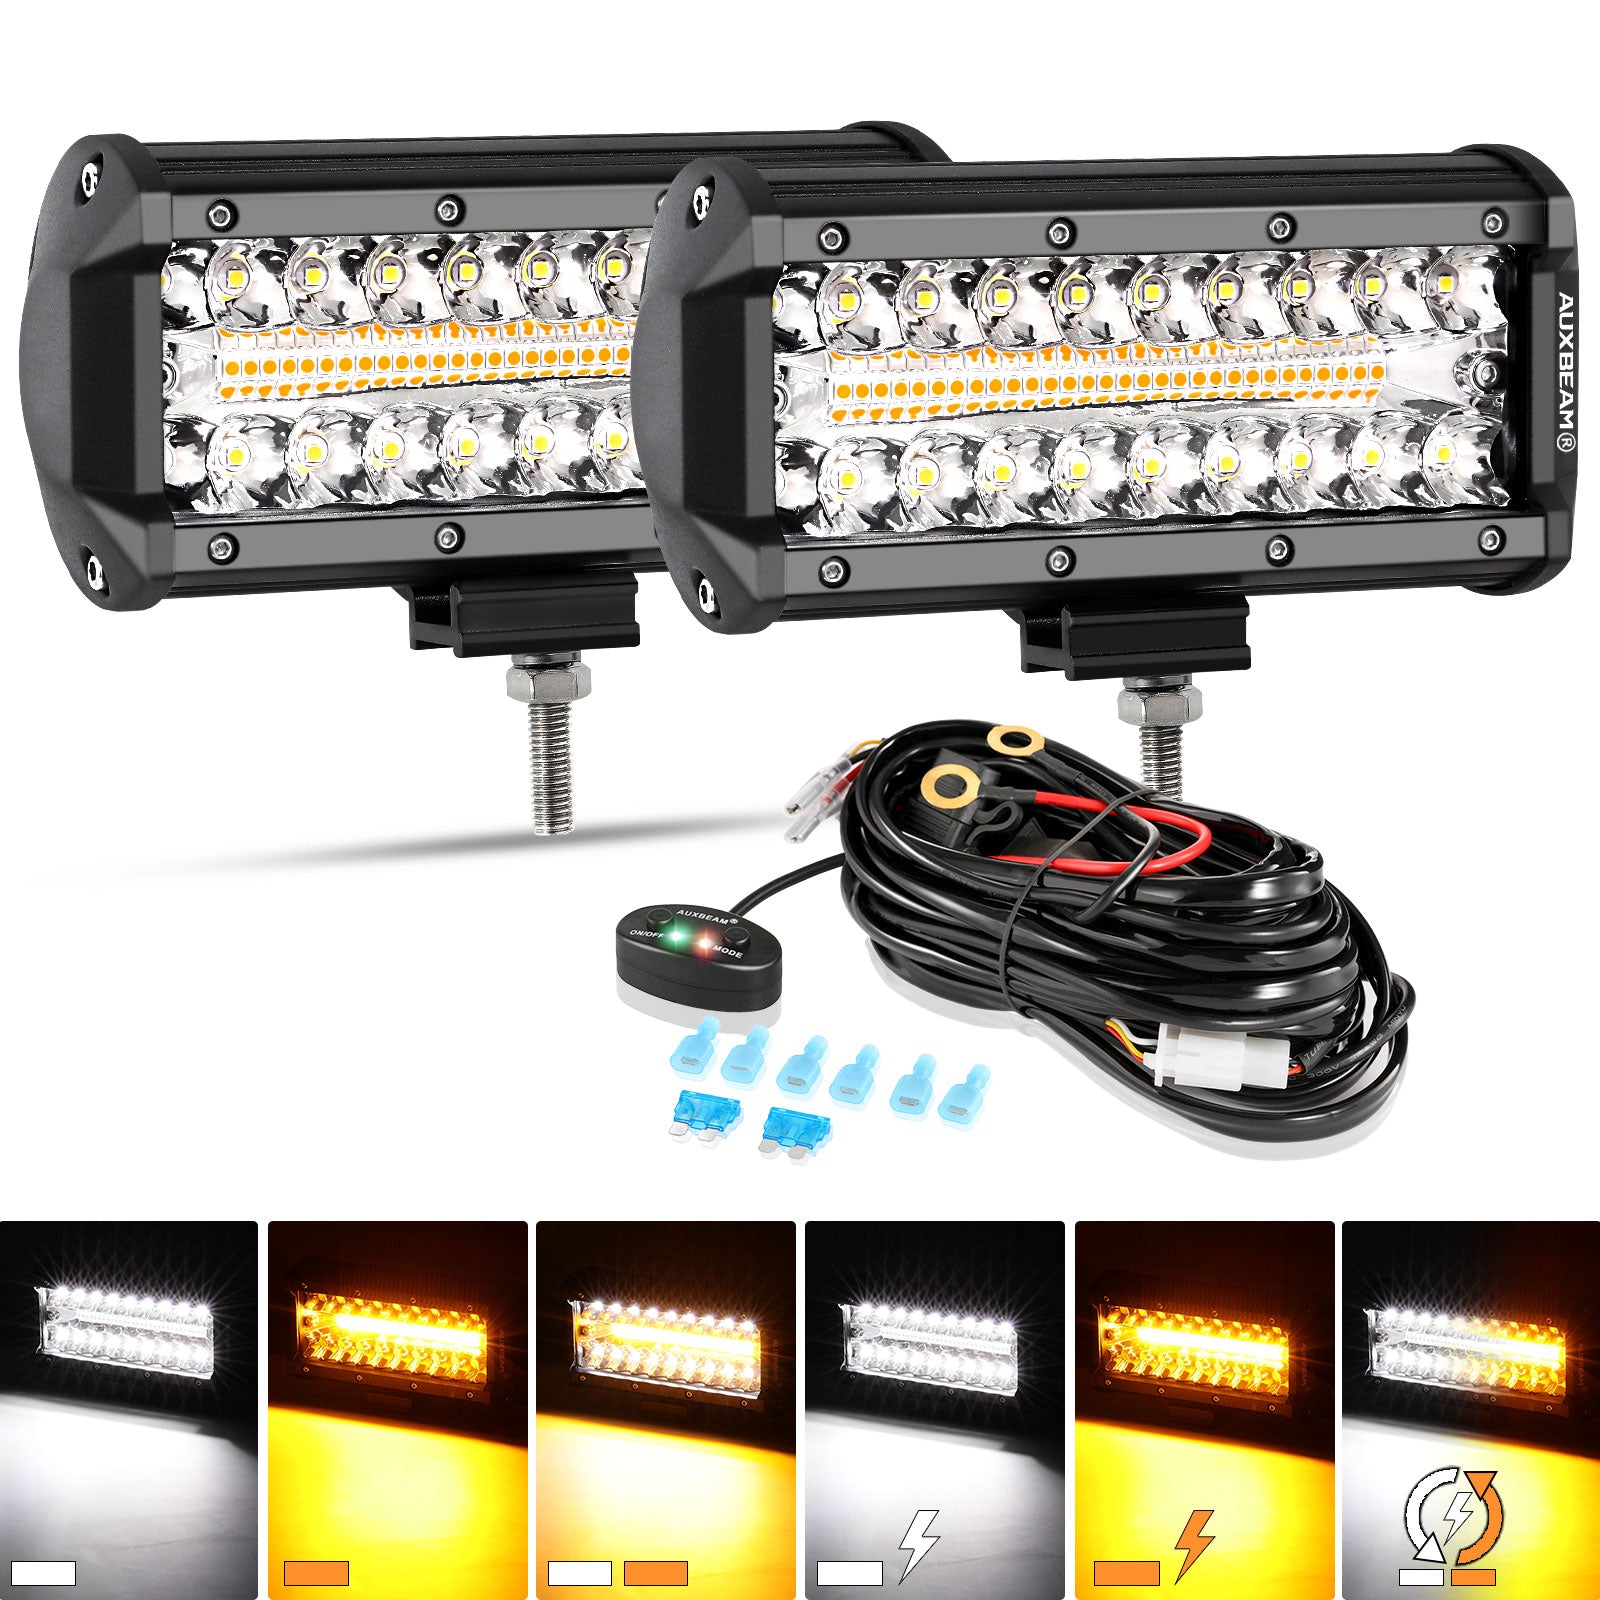 Auxbeam® 7 inch Off Road Led Light for Pickup Trucks, UTV, ATV